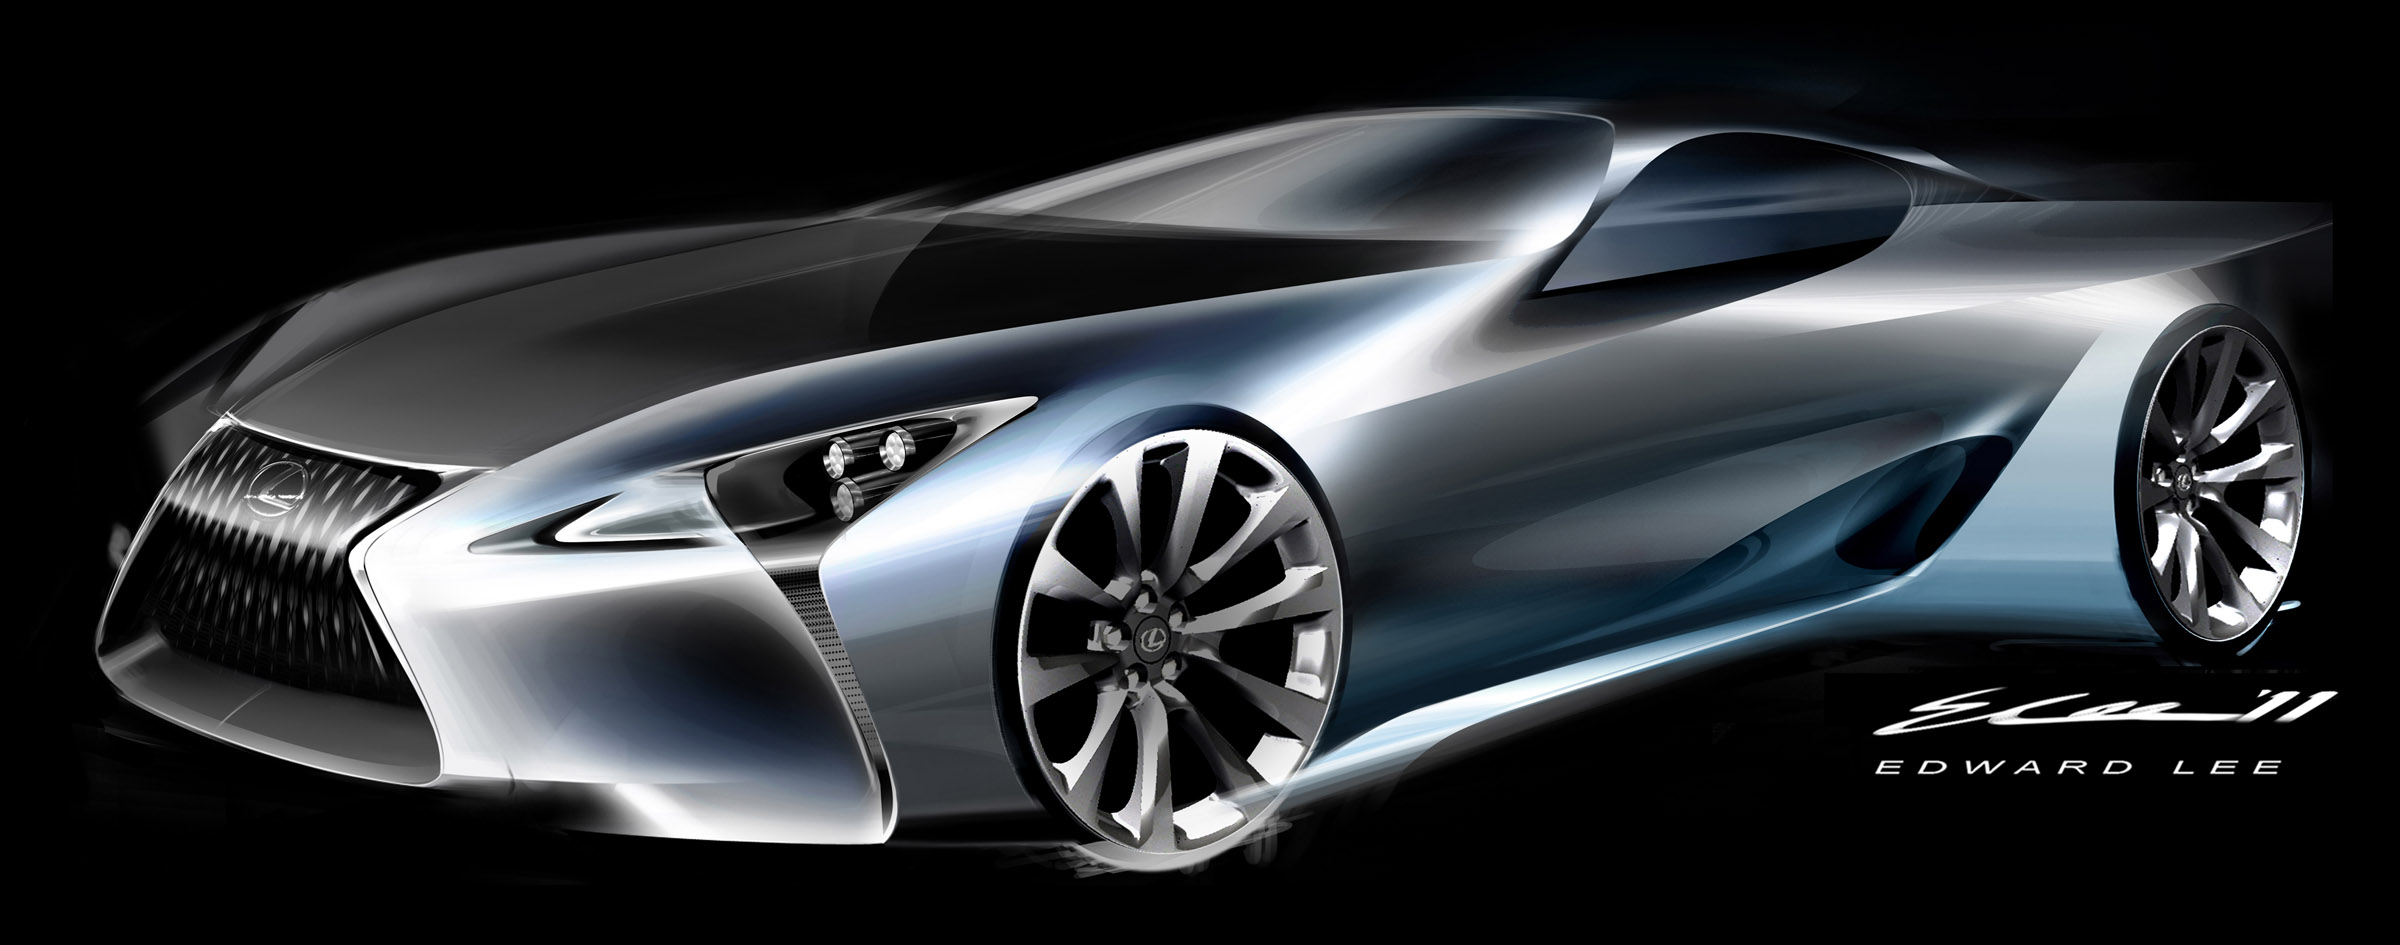 Lexus LF-LC Sport Coupe Concept